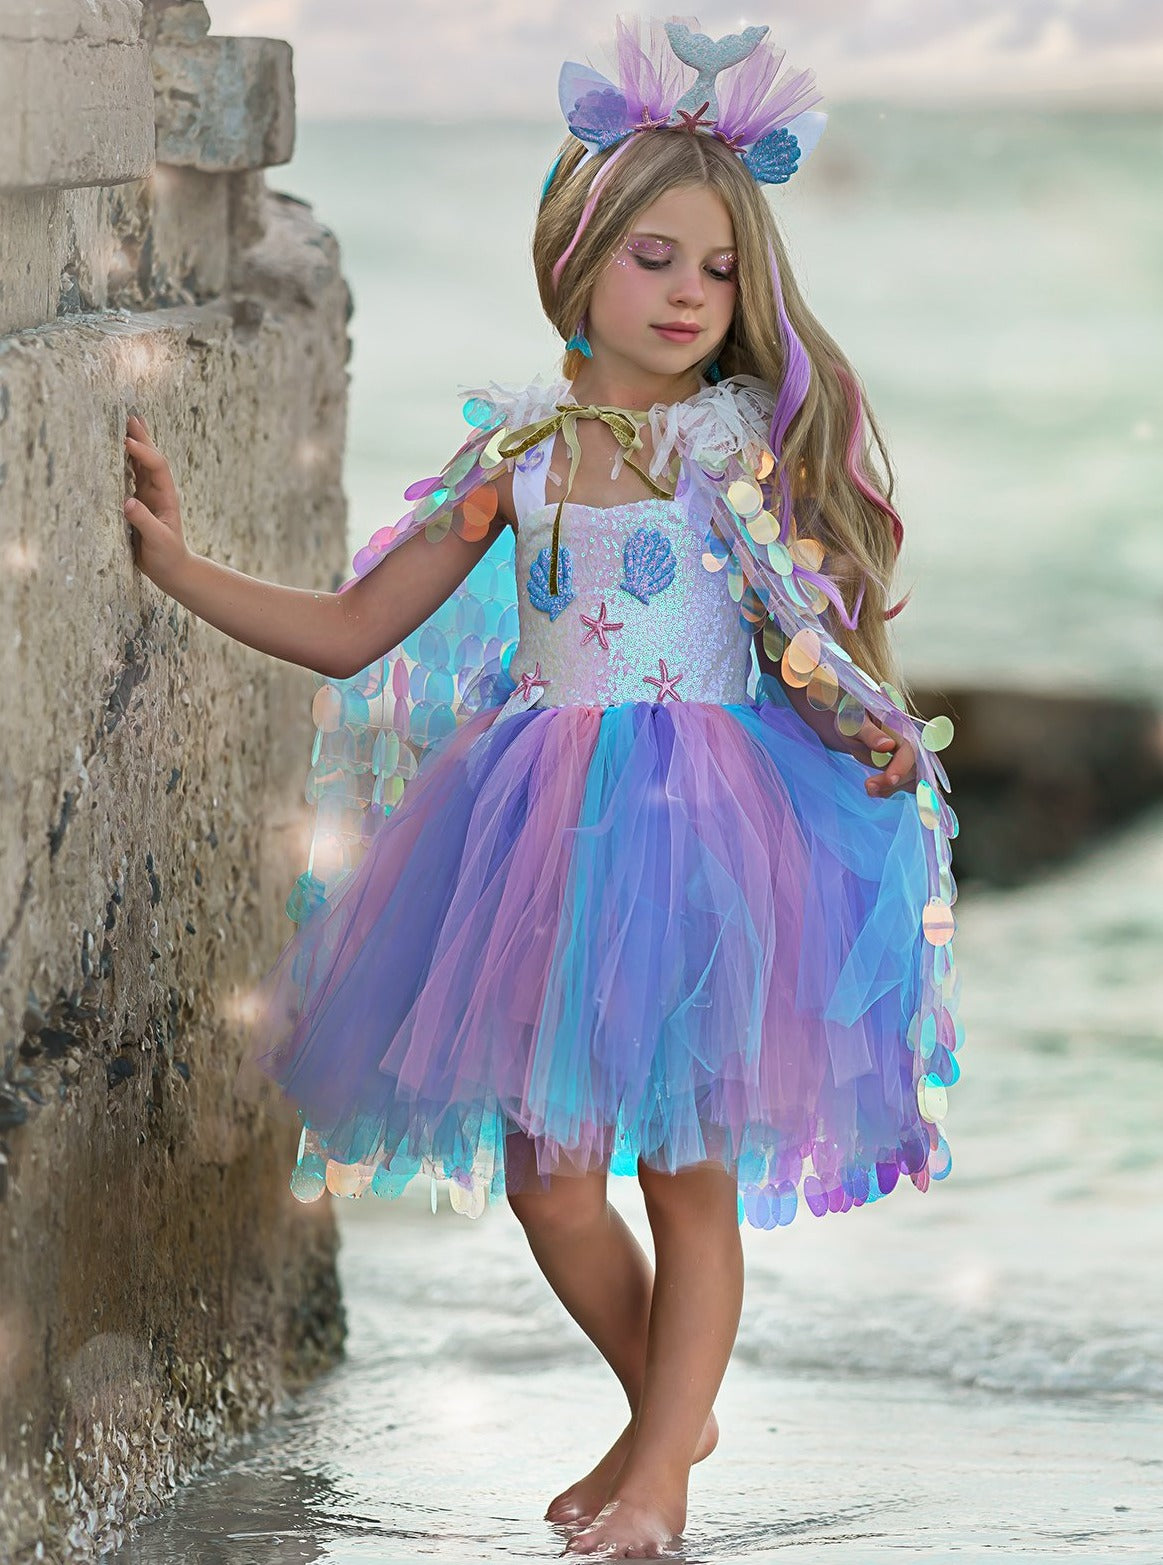 Mermaid Unicorn Costume | Girls Halloween Costumes - Mia Belle Girls